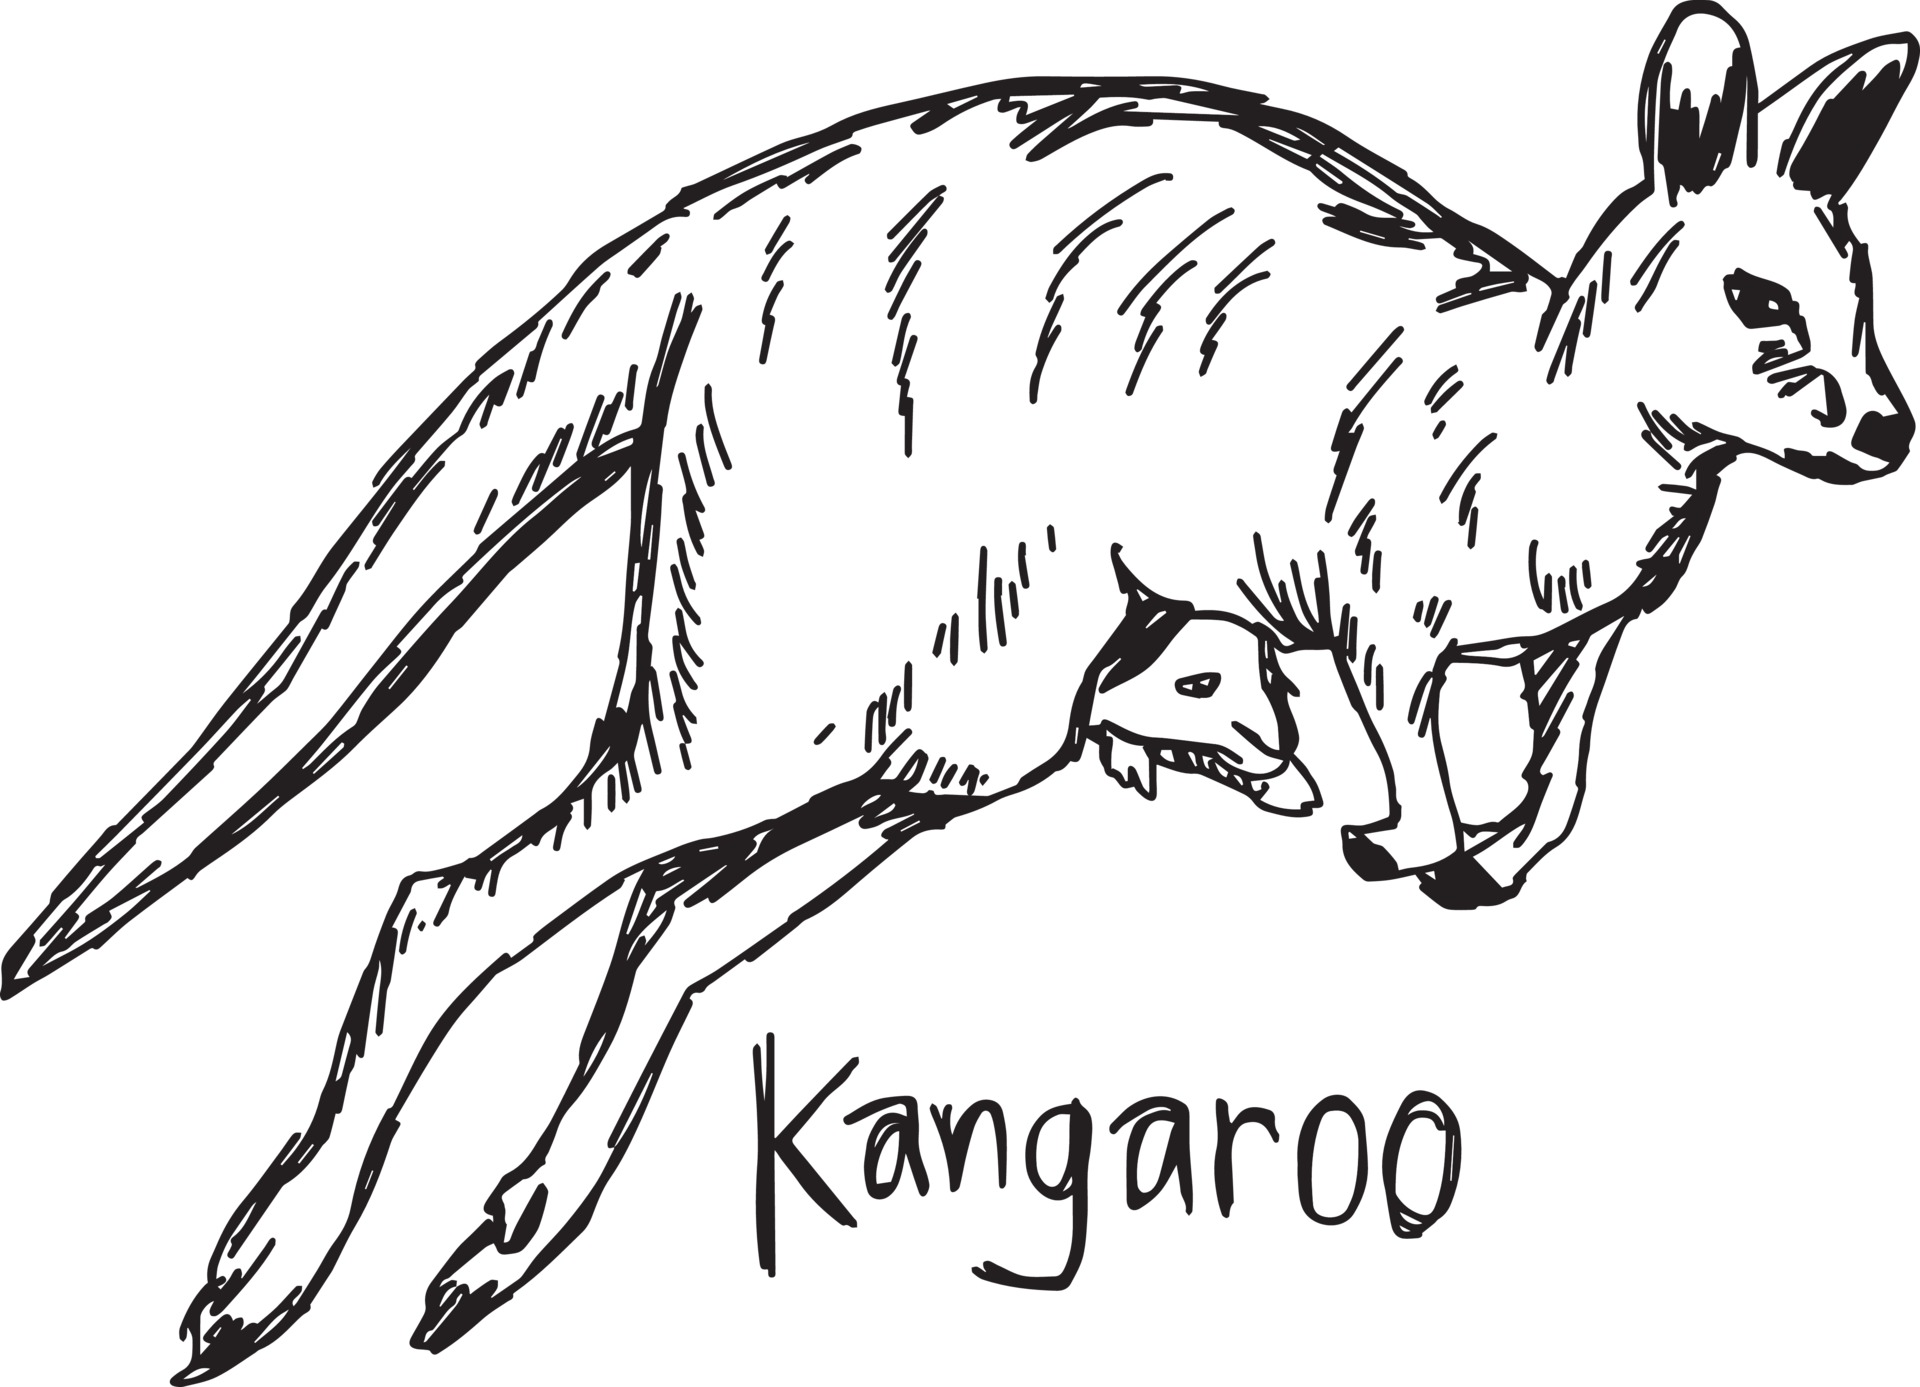 Kangourou Avec Bébé